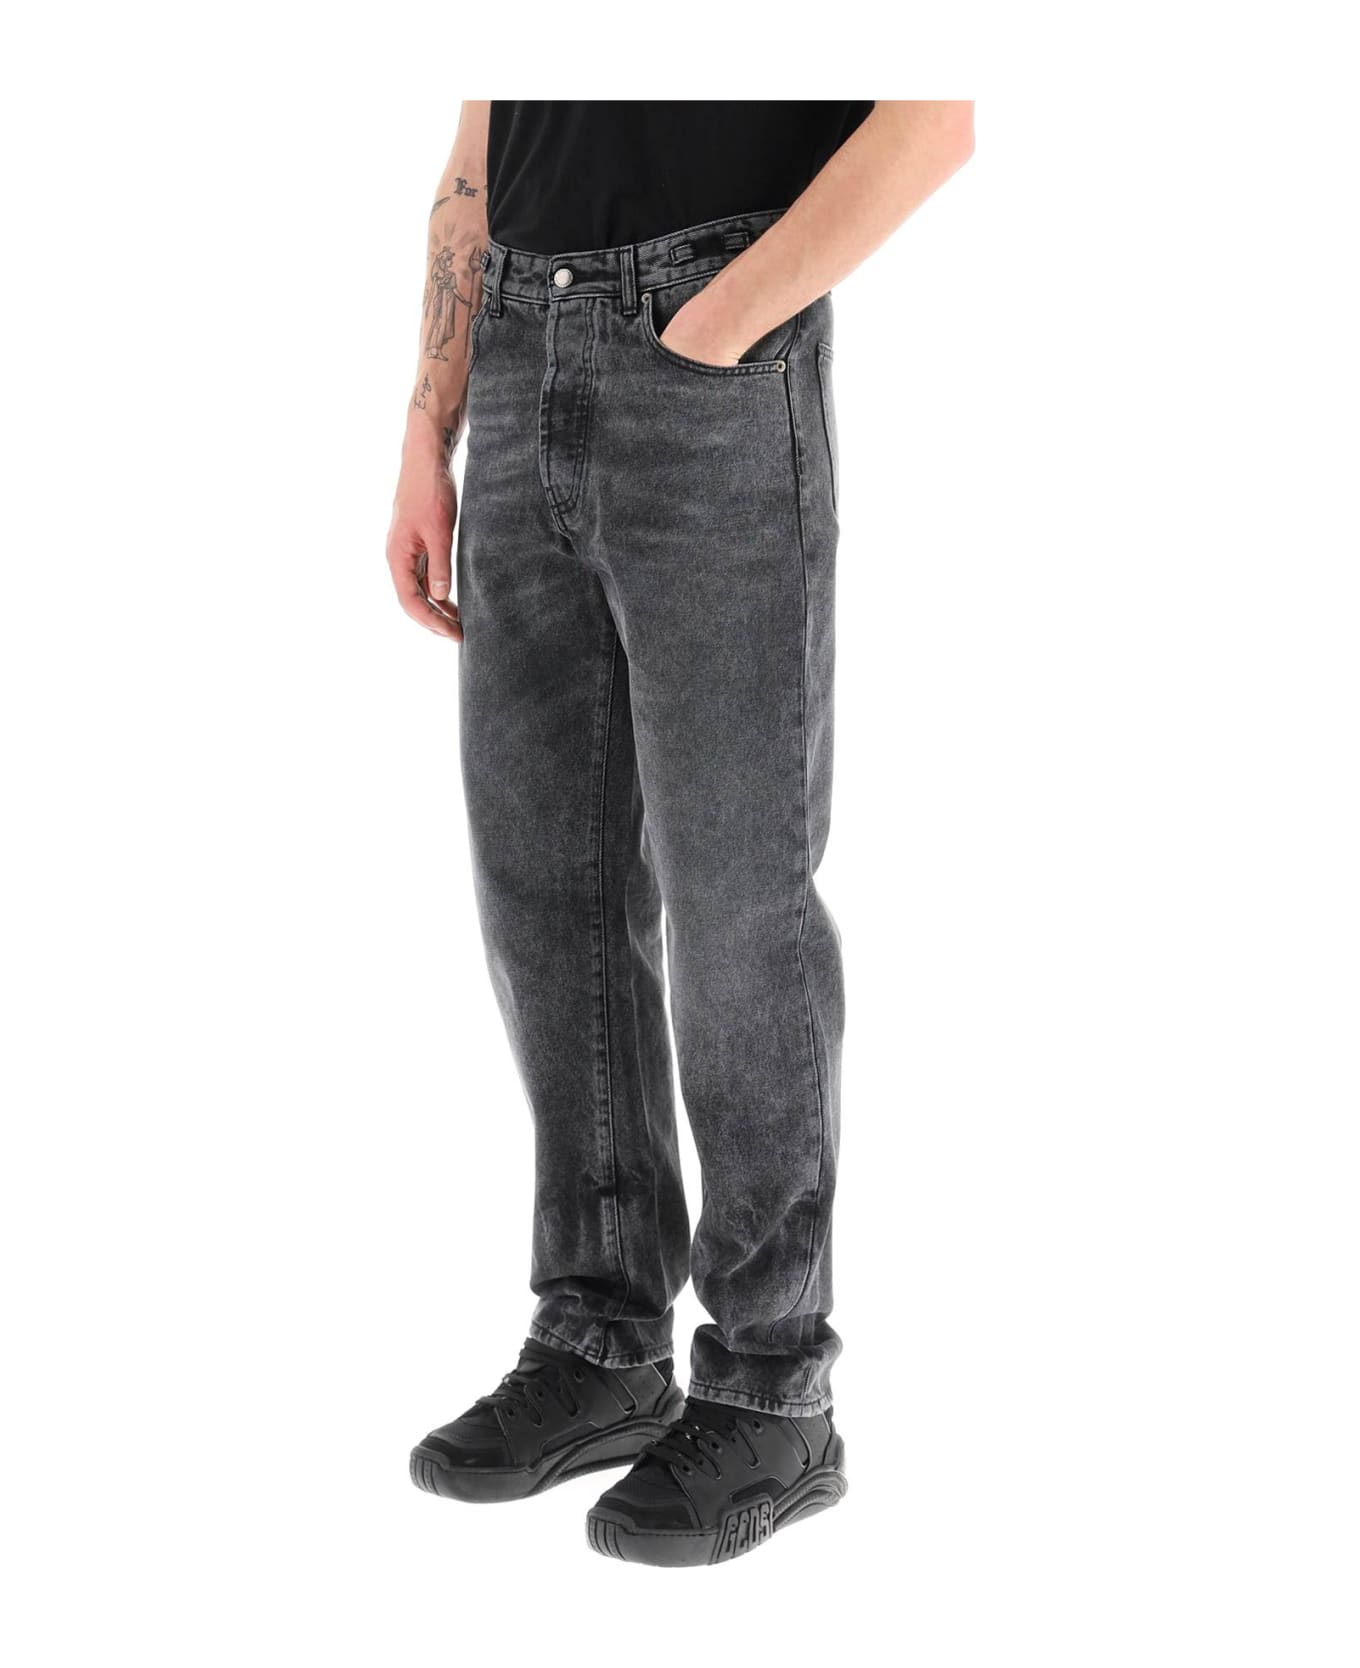 DARKPARK Mark Relax Jeans - USED BLACK (Black)